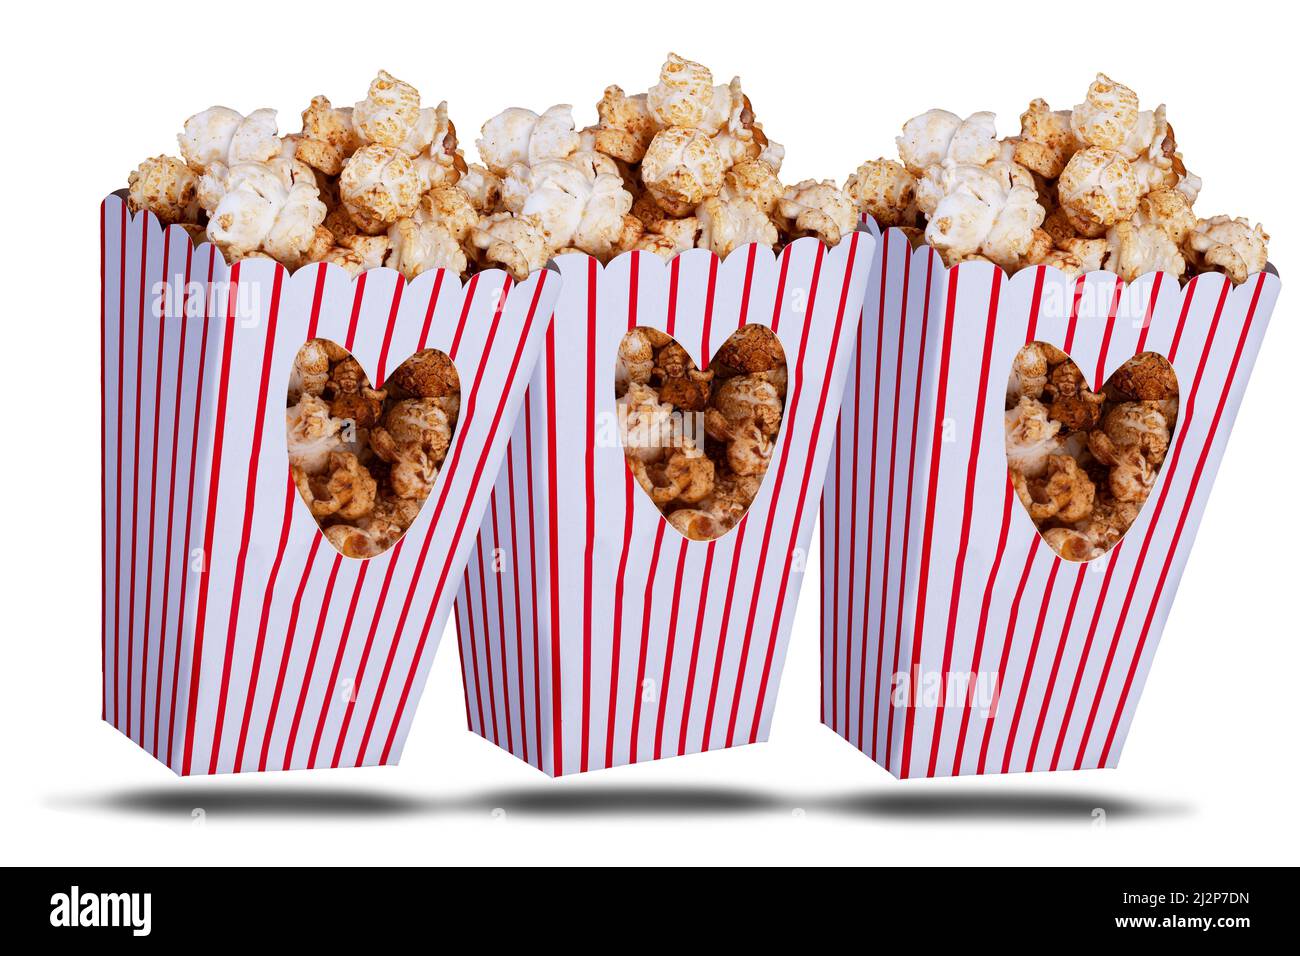 Popcorn boxes immagini e fotografie stock ad alta risoluzione - Alamy